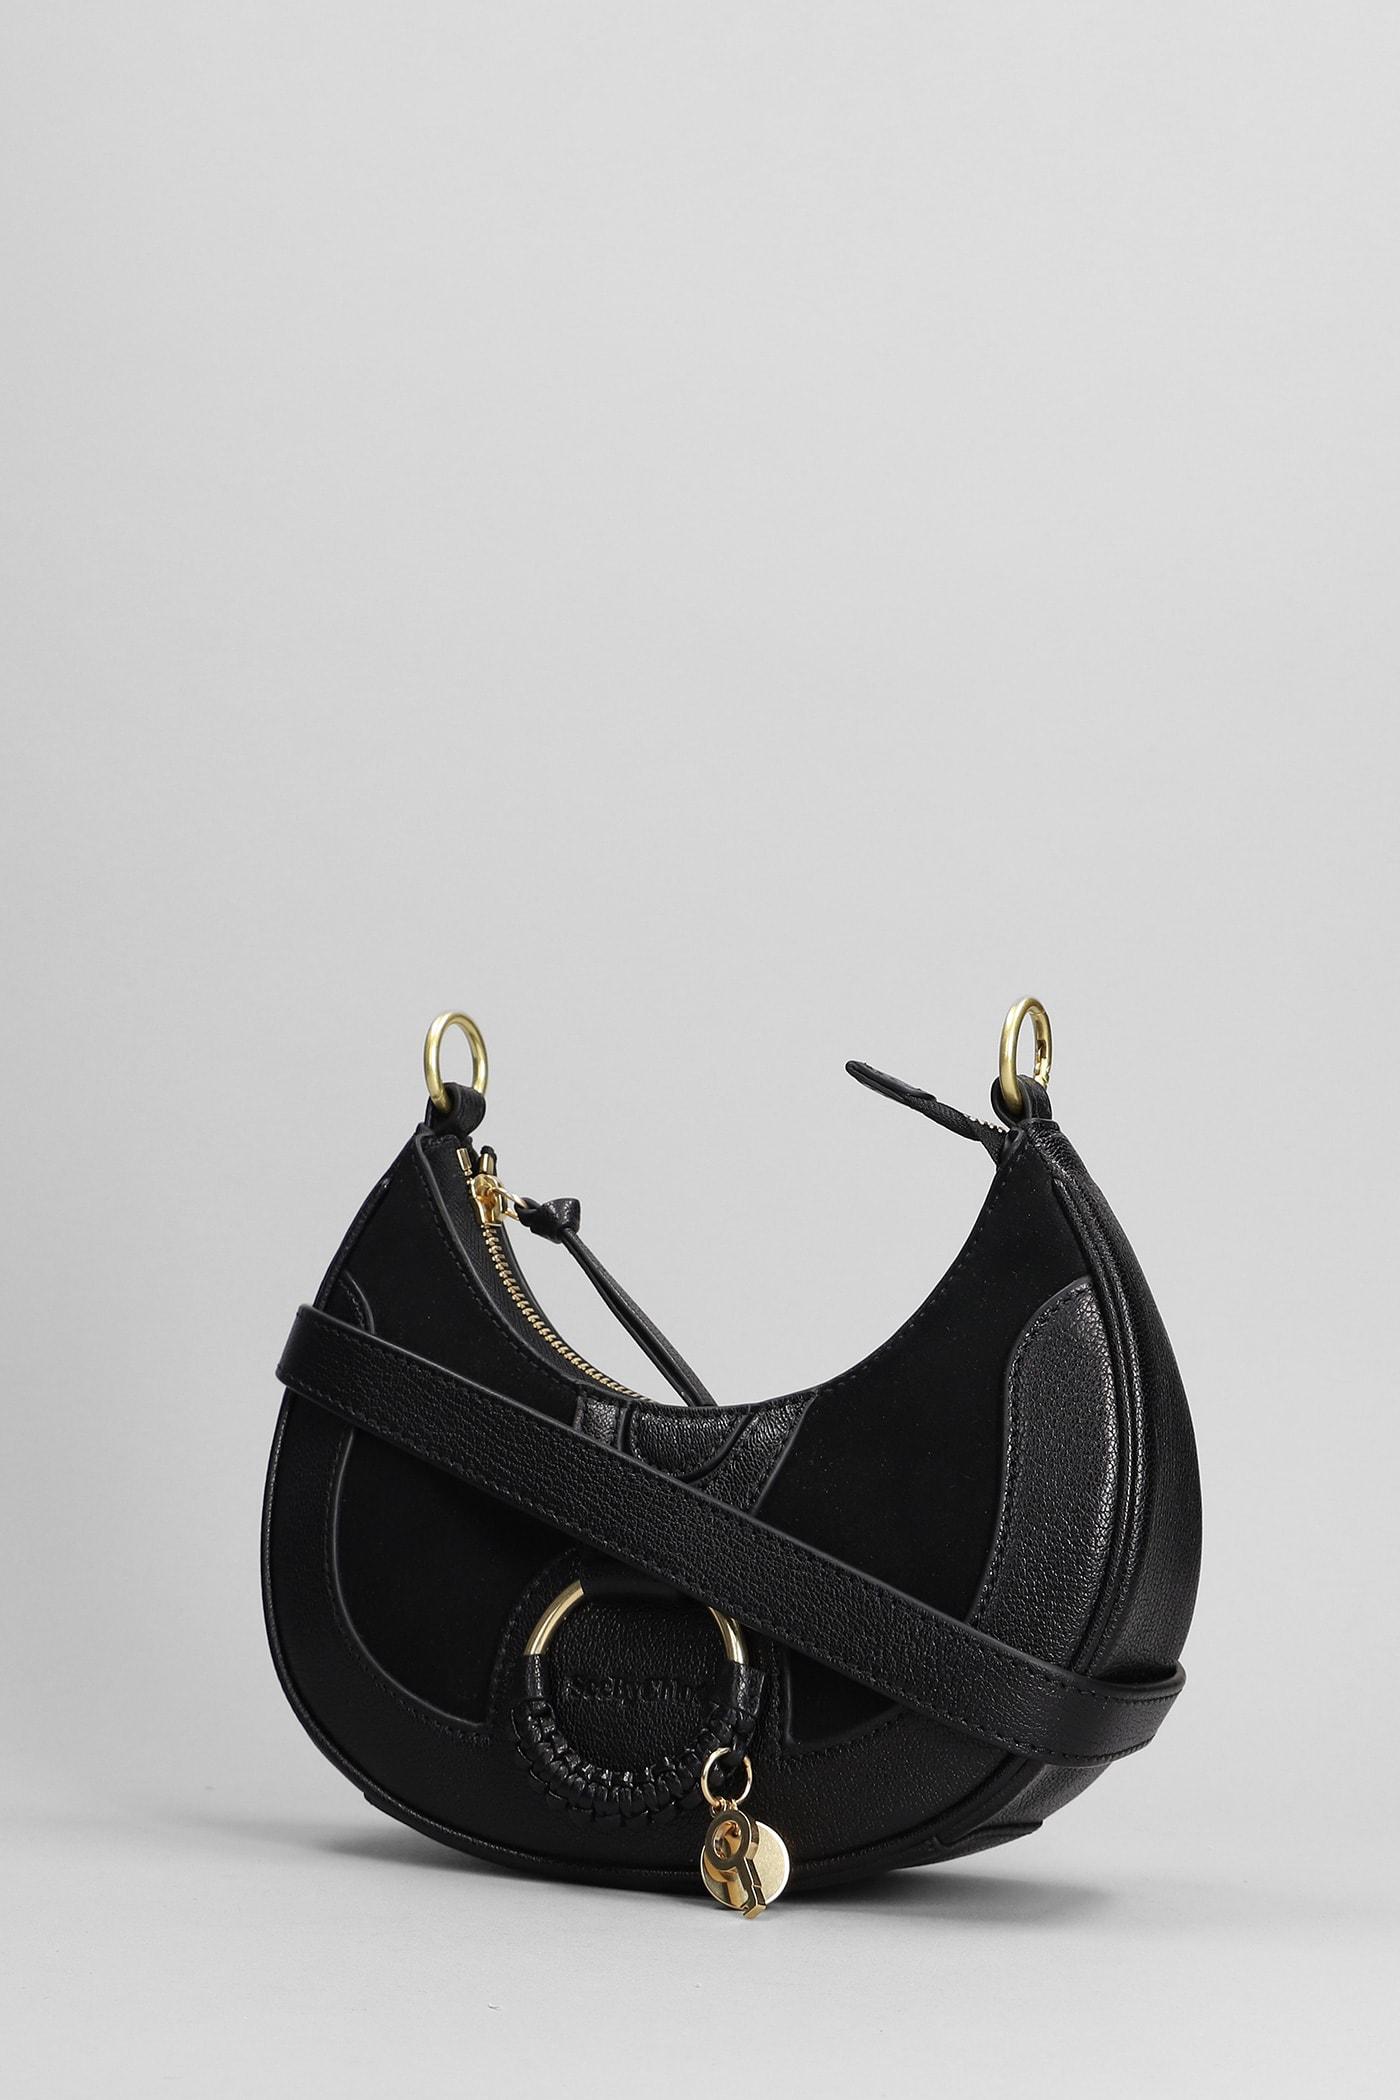 See by Chloé Black Essential Phone Holder Shoulder Bag